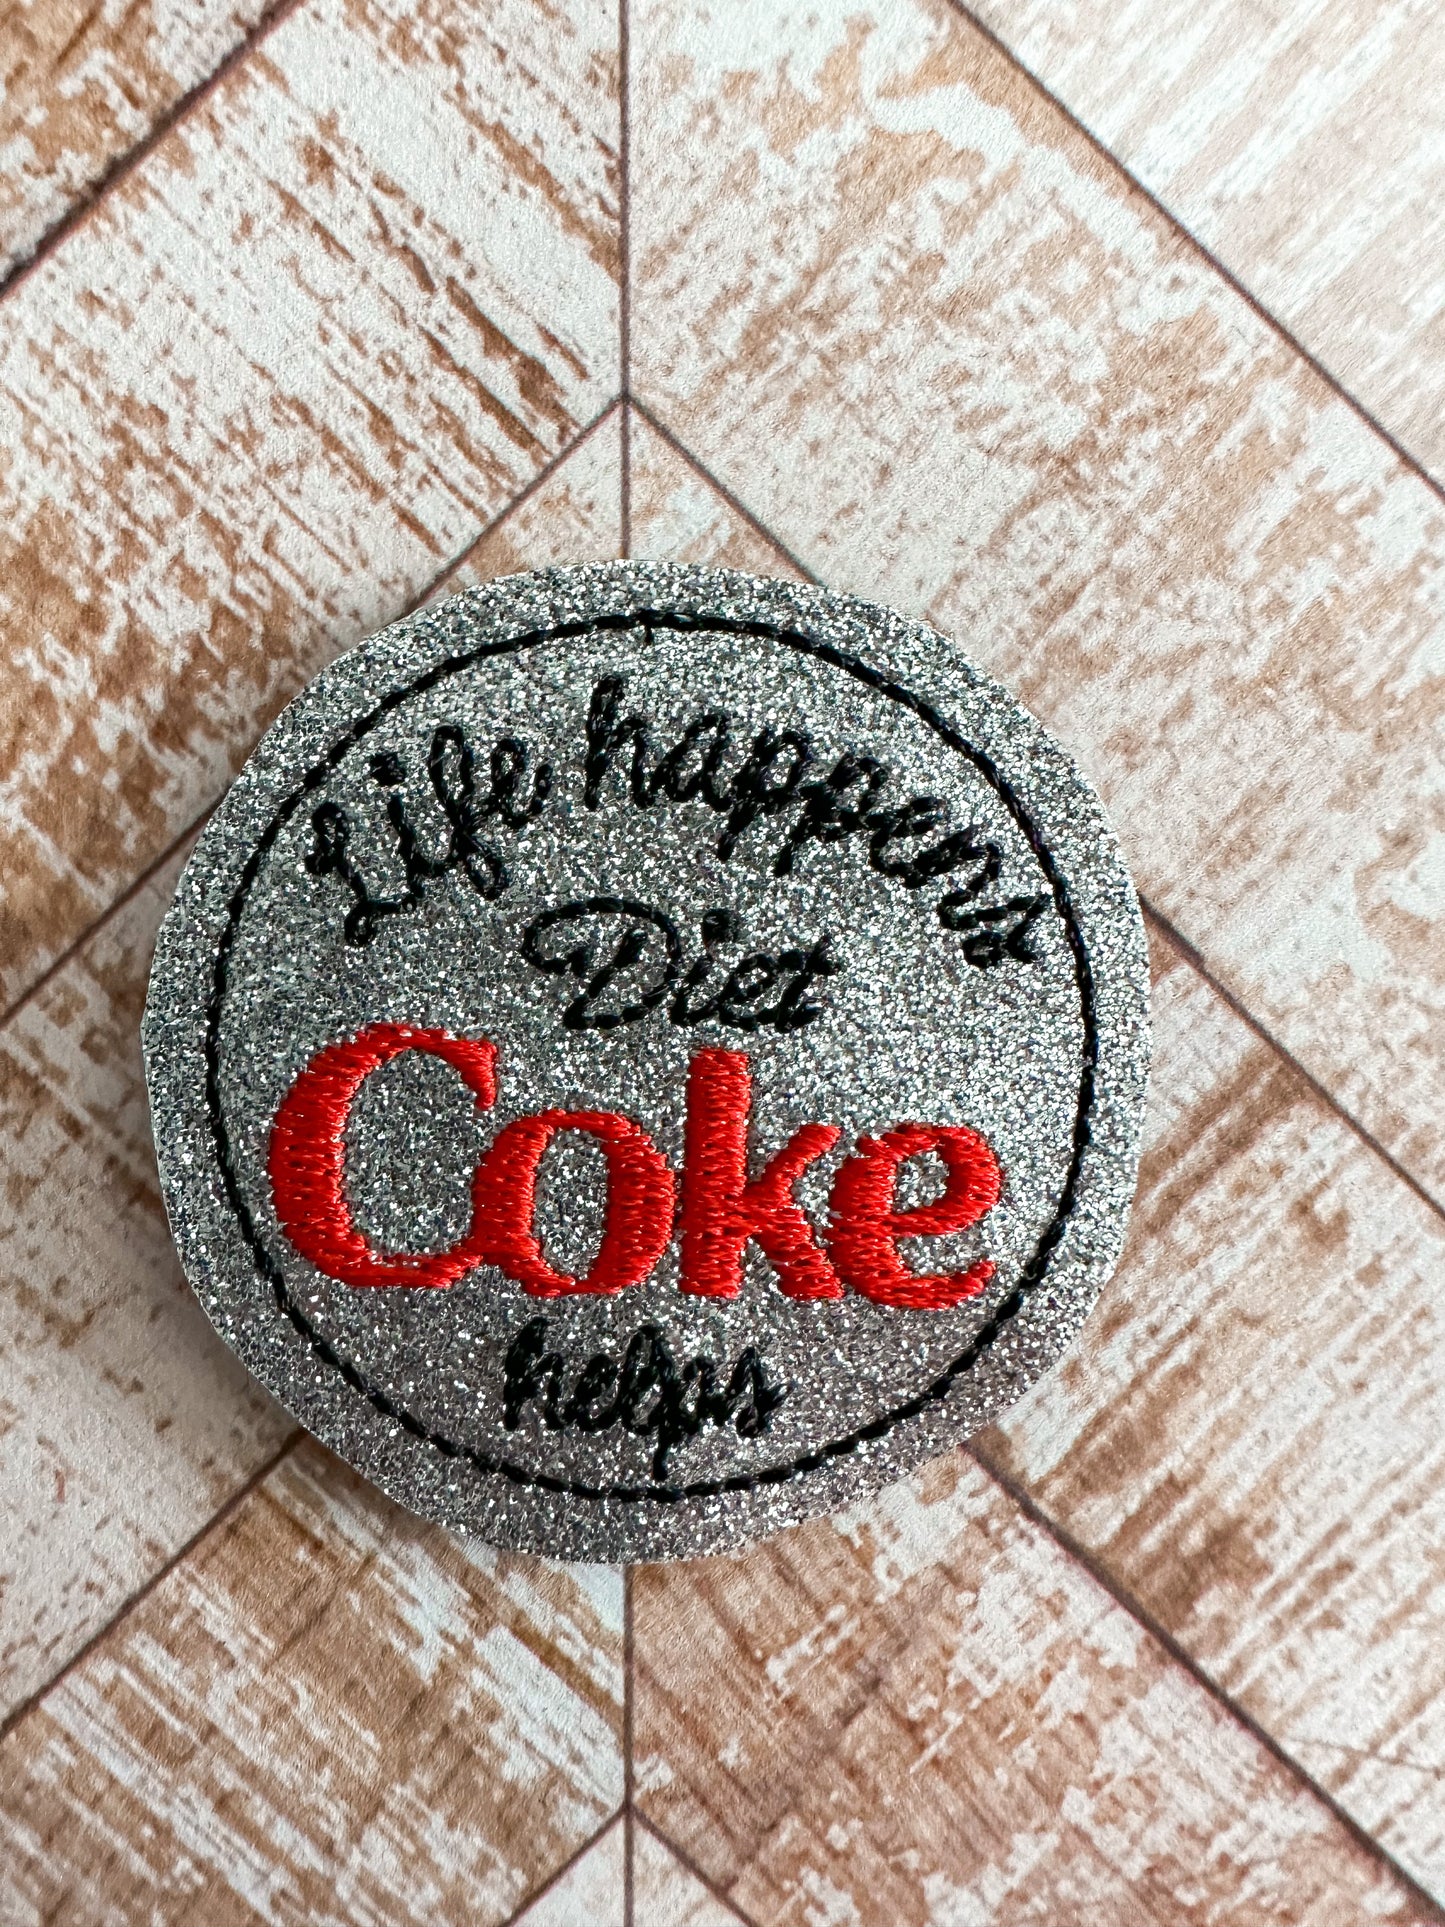 Diet Coke Helps Feltie